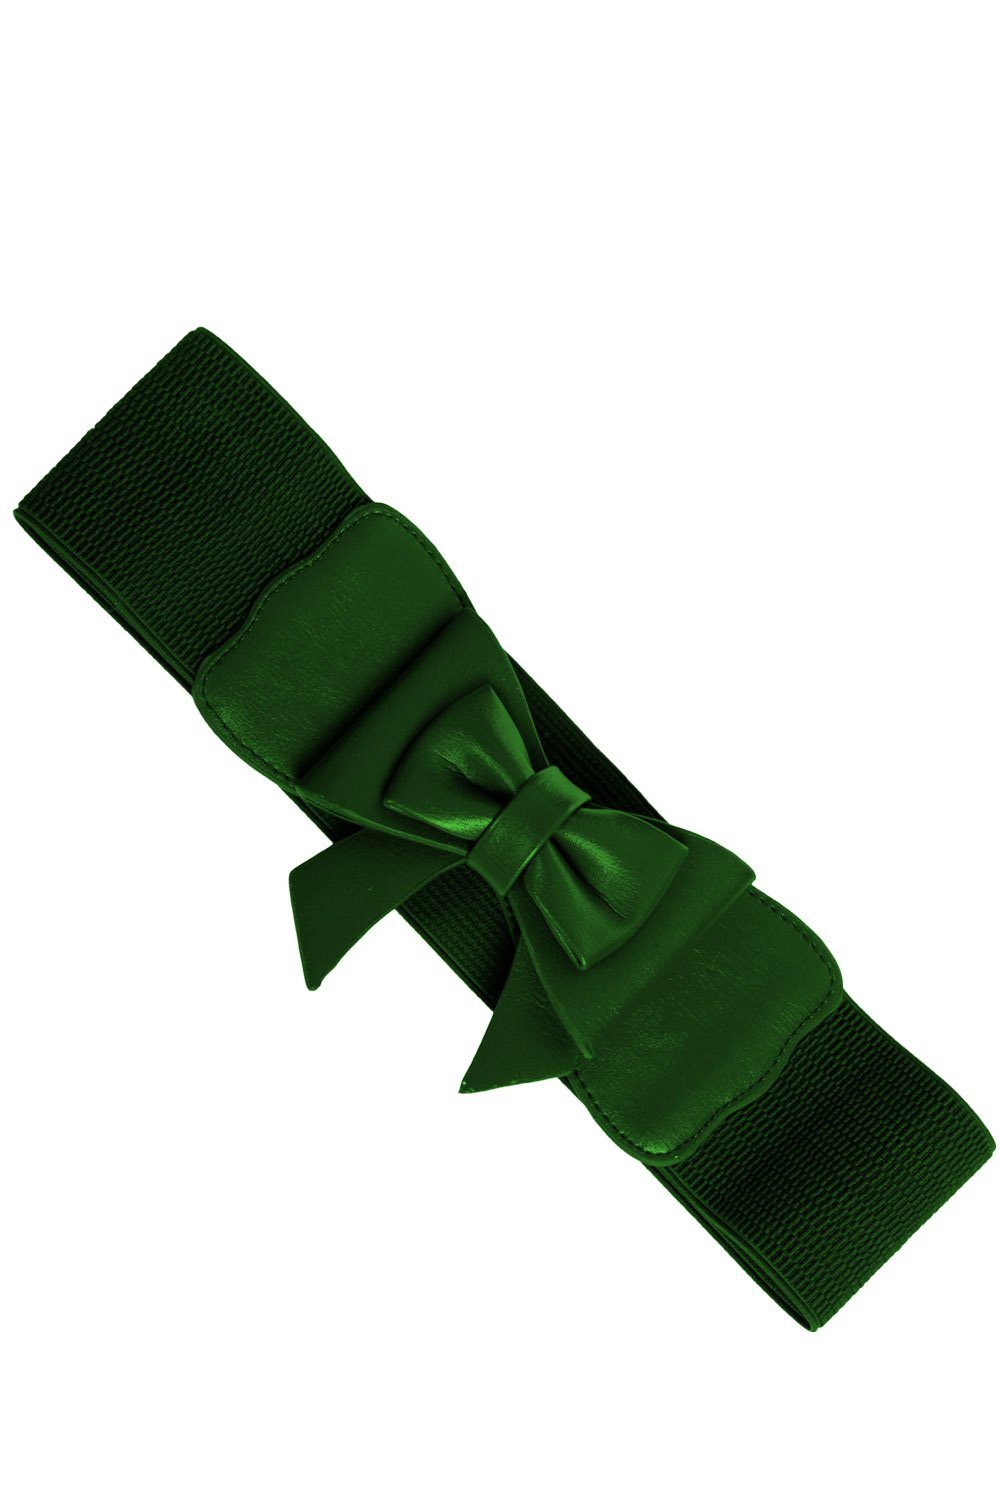 Banned Taillengürtel Play It Right Grün Vintage Retro Stretchgürtel mit Schleife | Taillengürtel